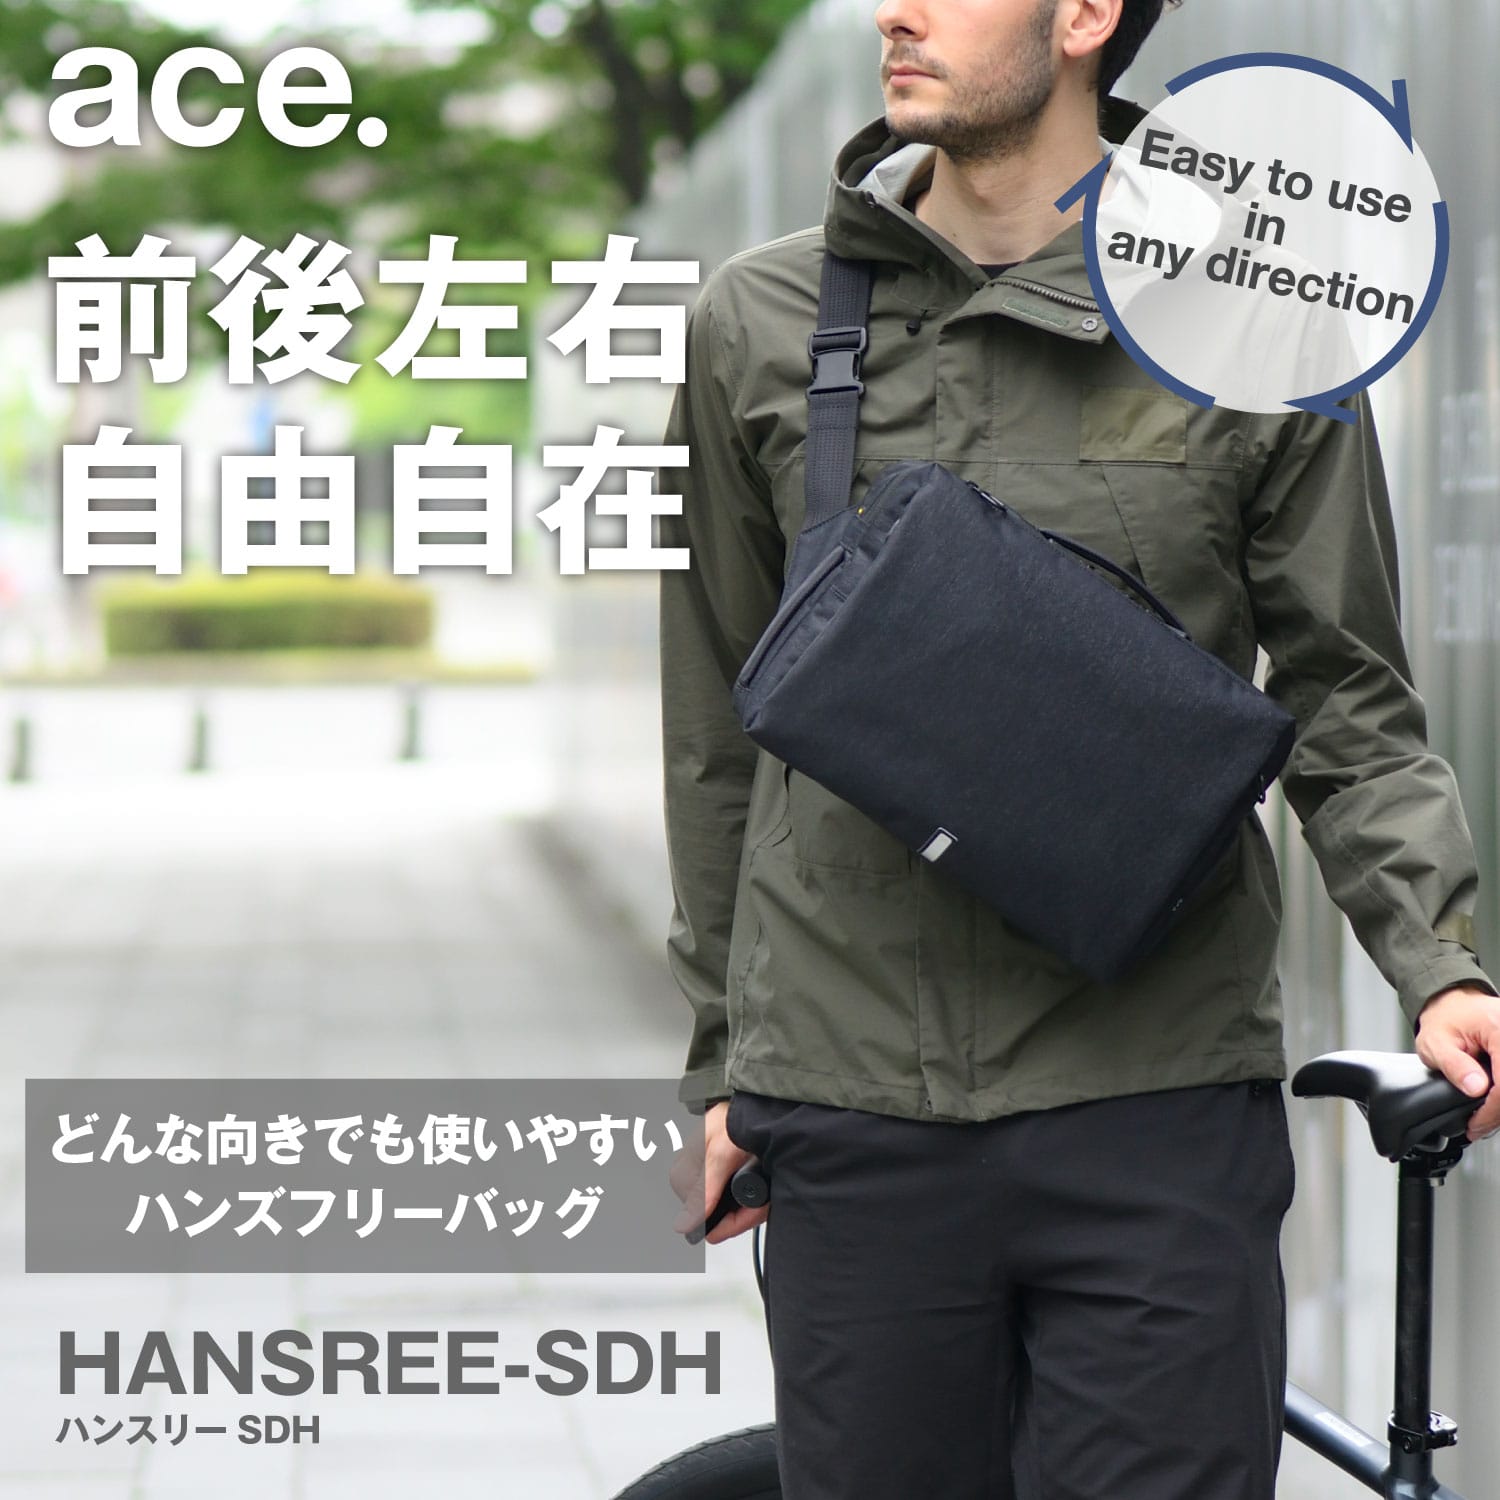 エース ハンスリーSDH / ace. GENE LABEL  どの向きでも使いやすい新発想のハンズフリーバッグ。